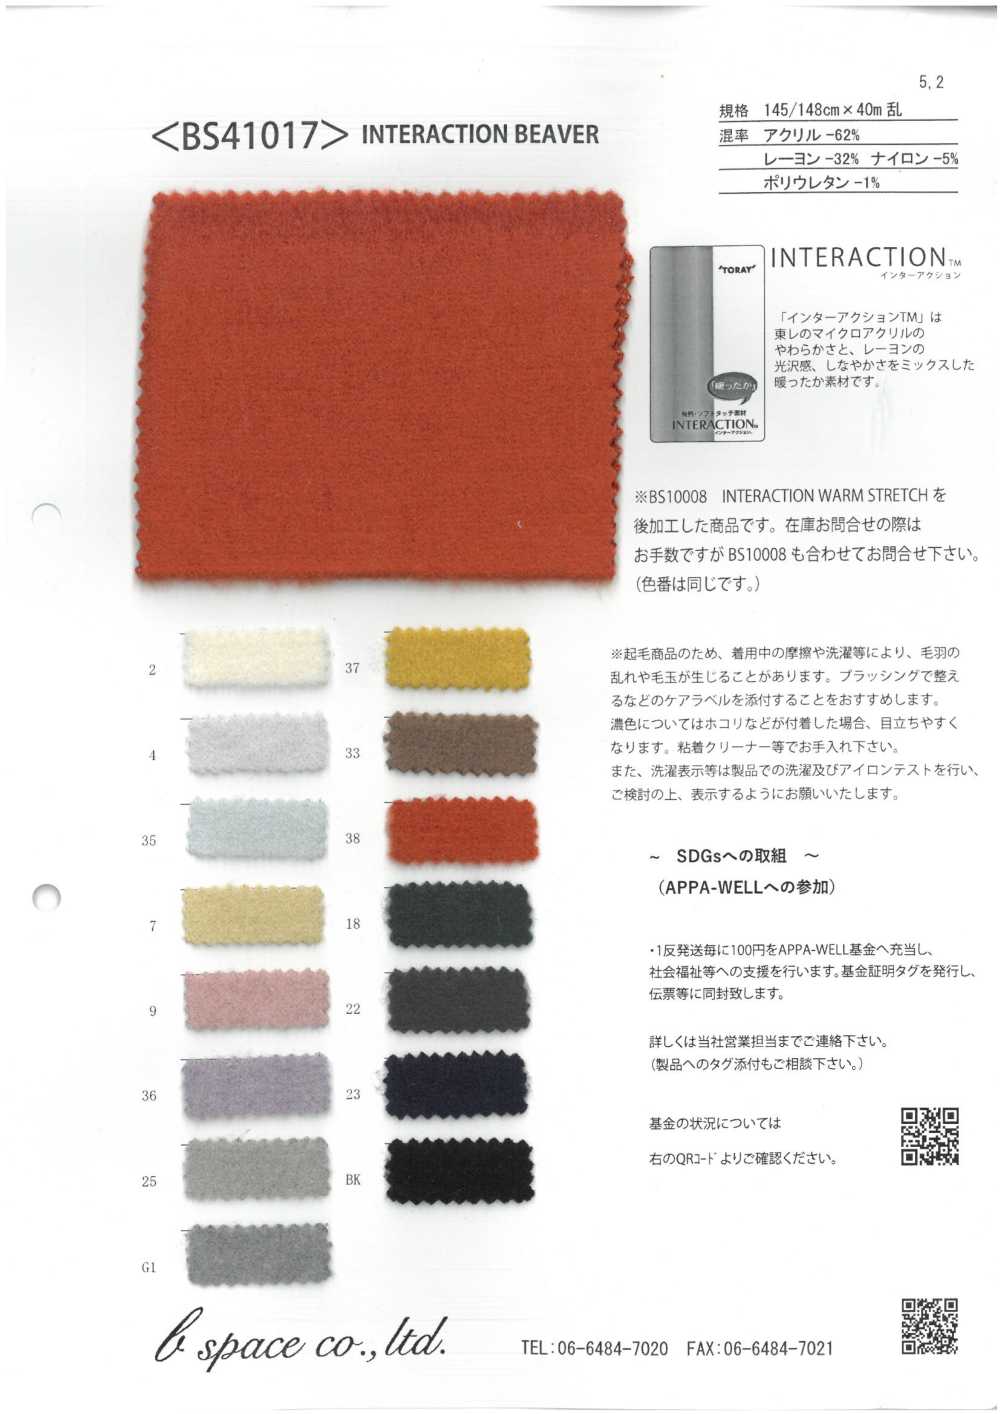 BS41017 Castor De Interacción[Fabrica Textil] Espacio Básico